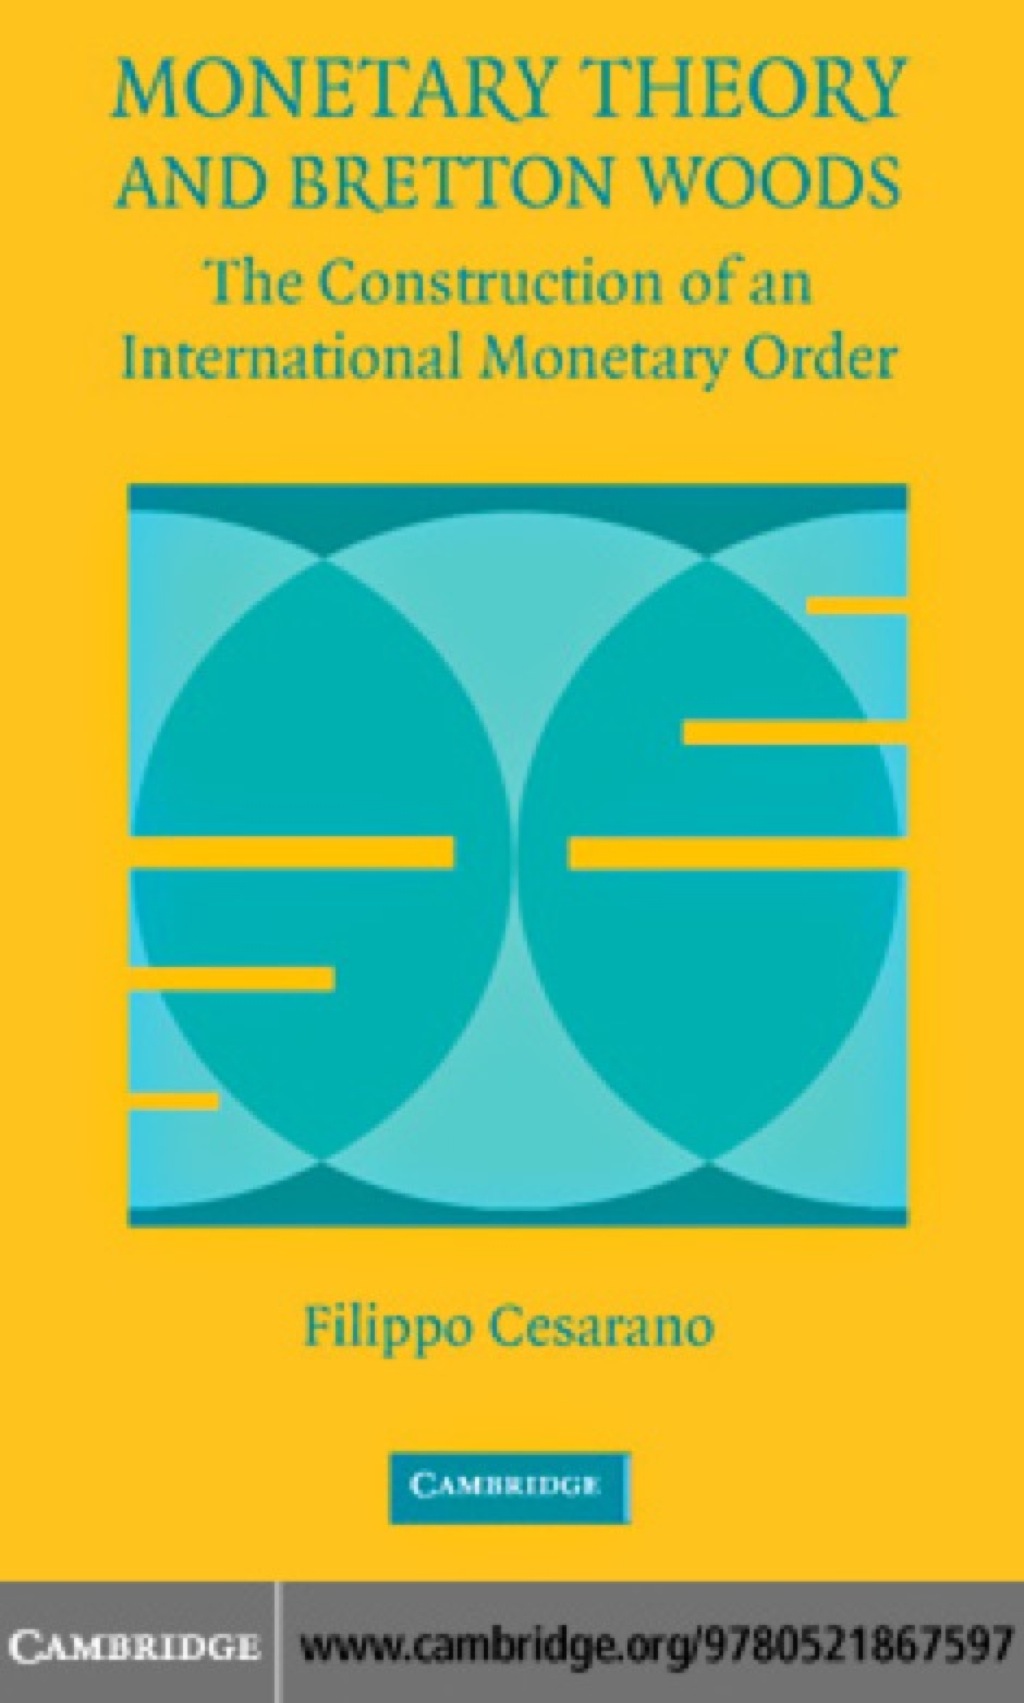 Monetary Theory and Bretton Woods (eBook) - Filippo Cesarano